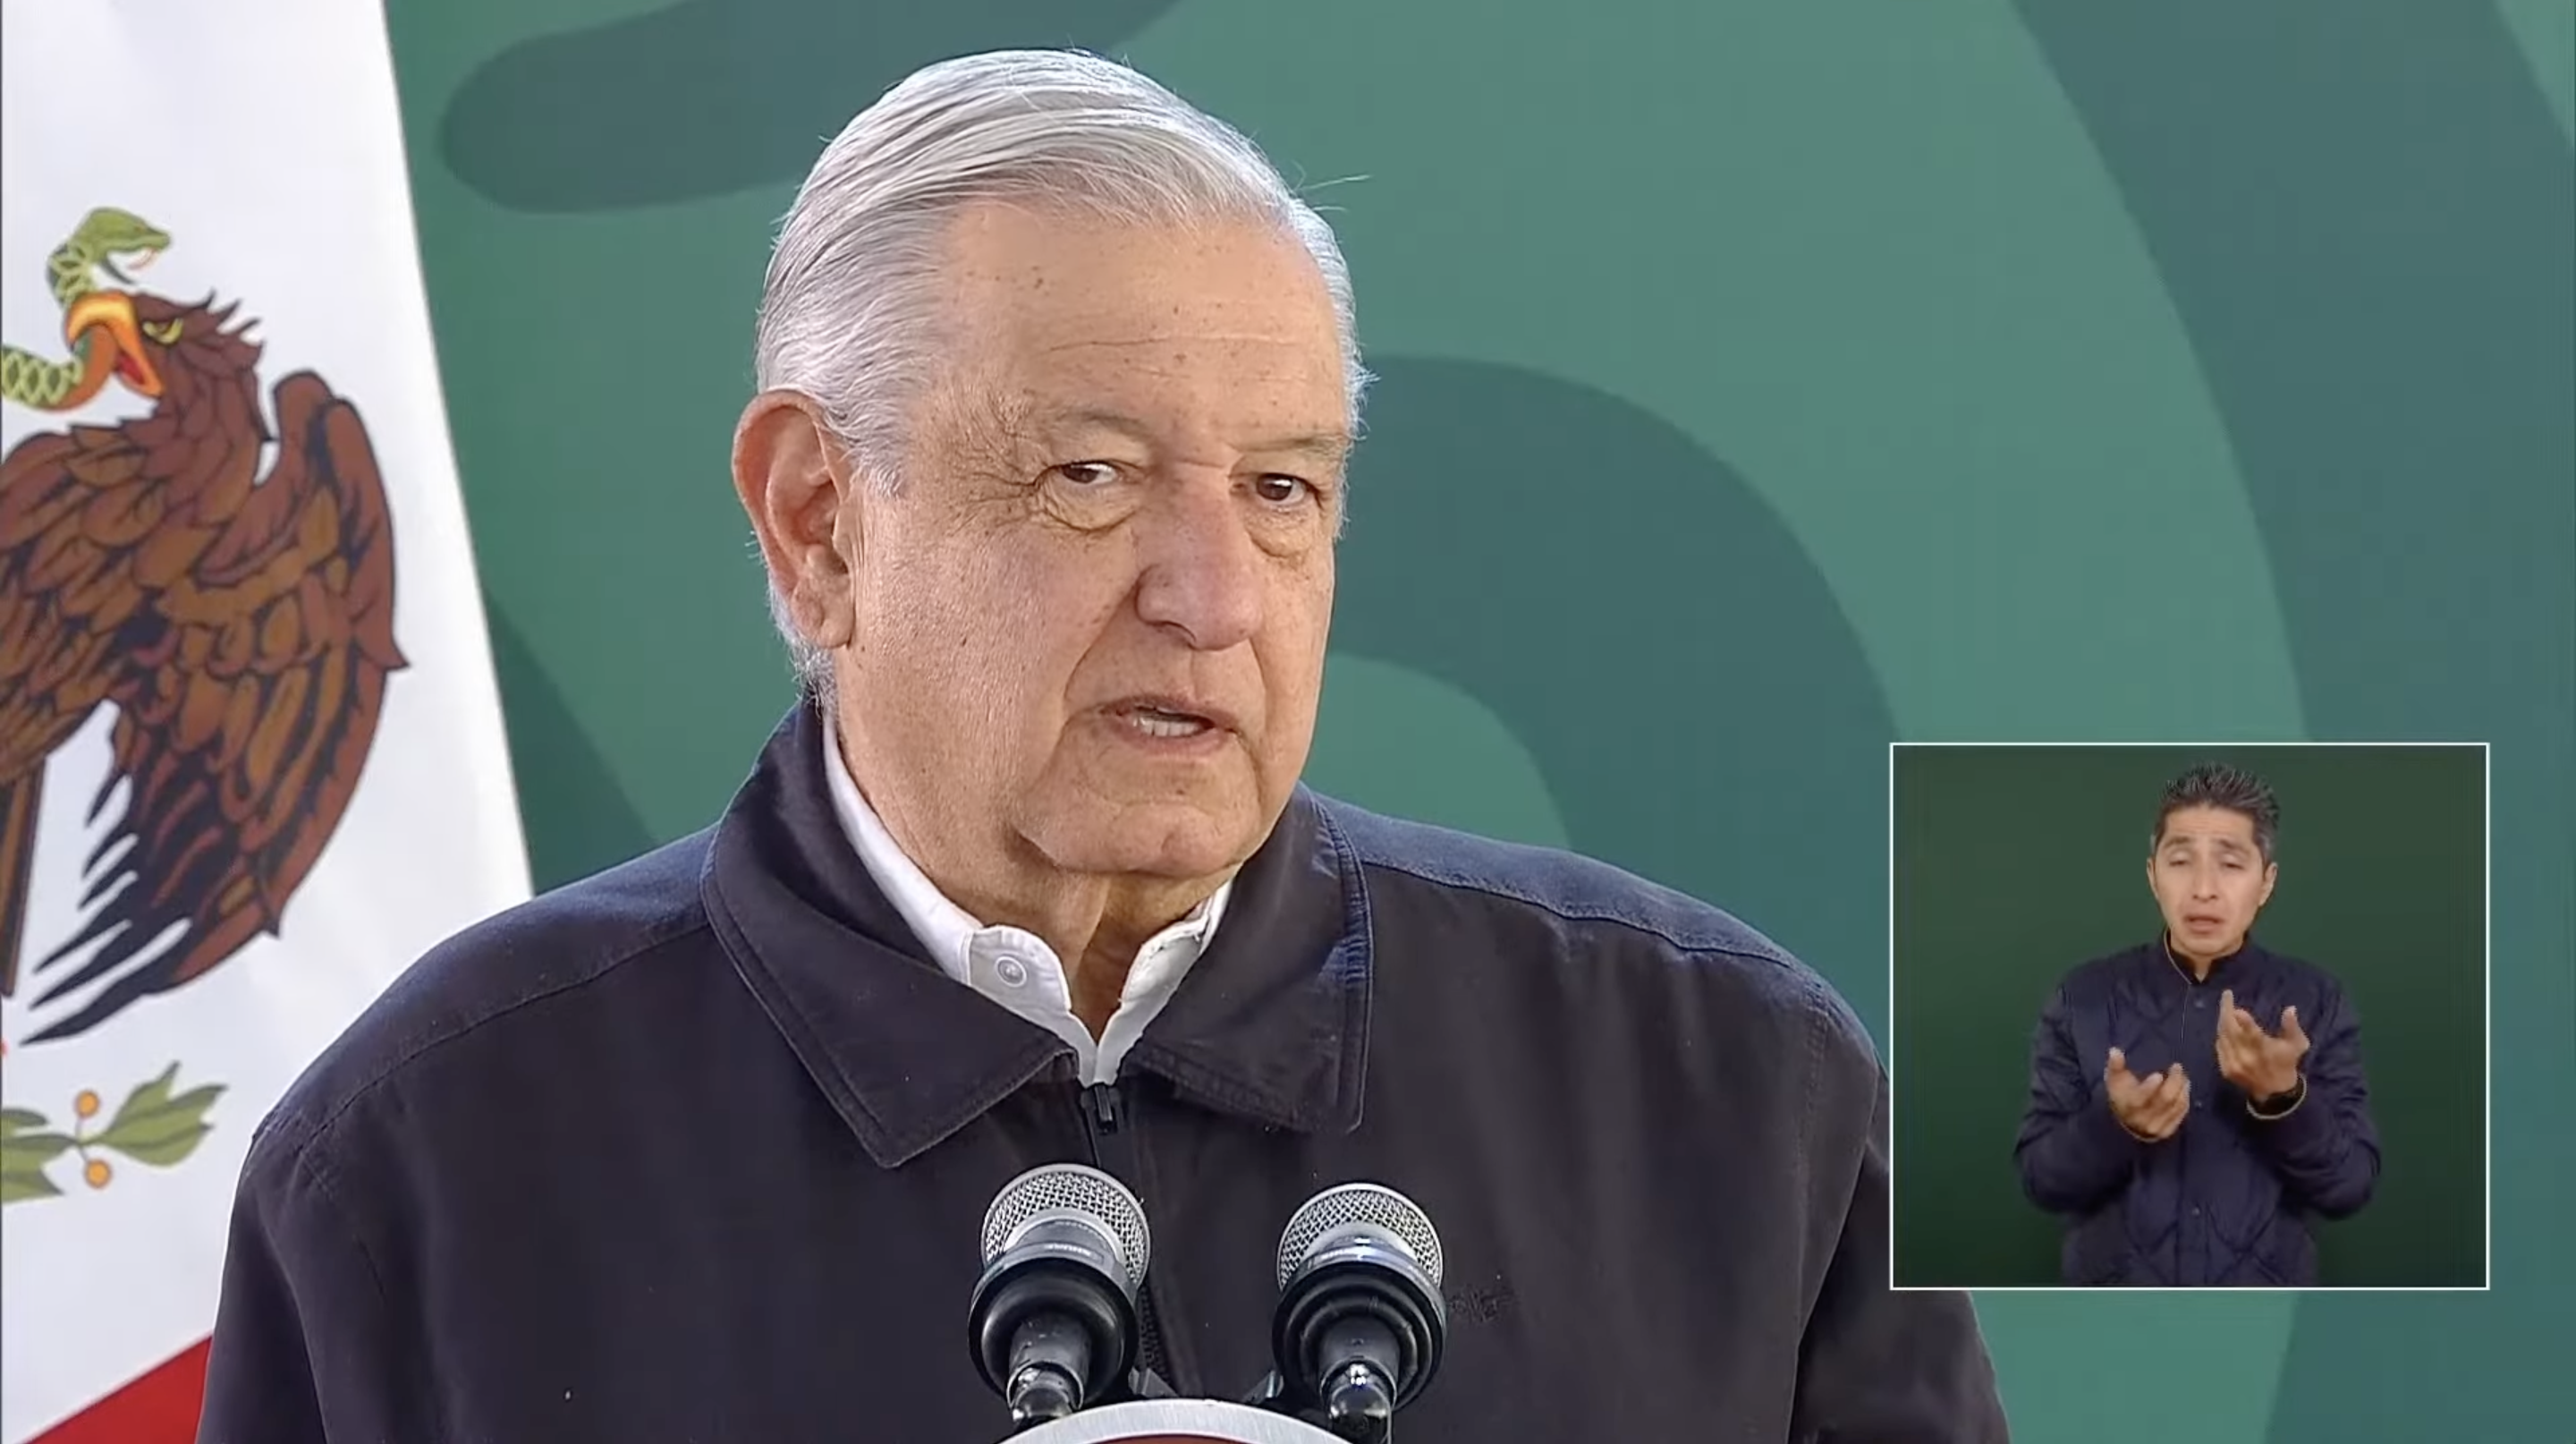 el presidente Andrés Manuel López Obrador en conferencia de prensa del 8 de marzo de 2024